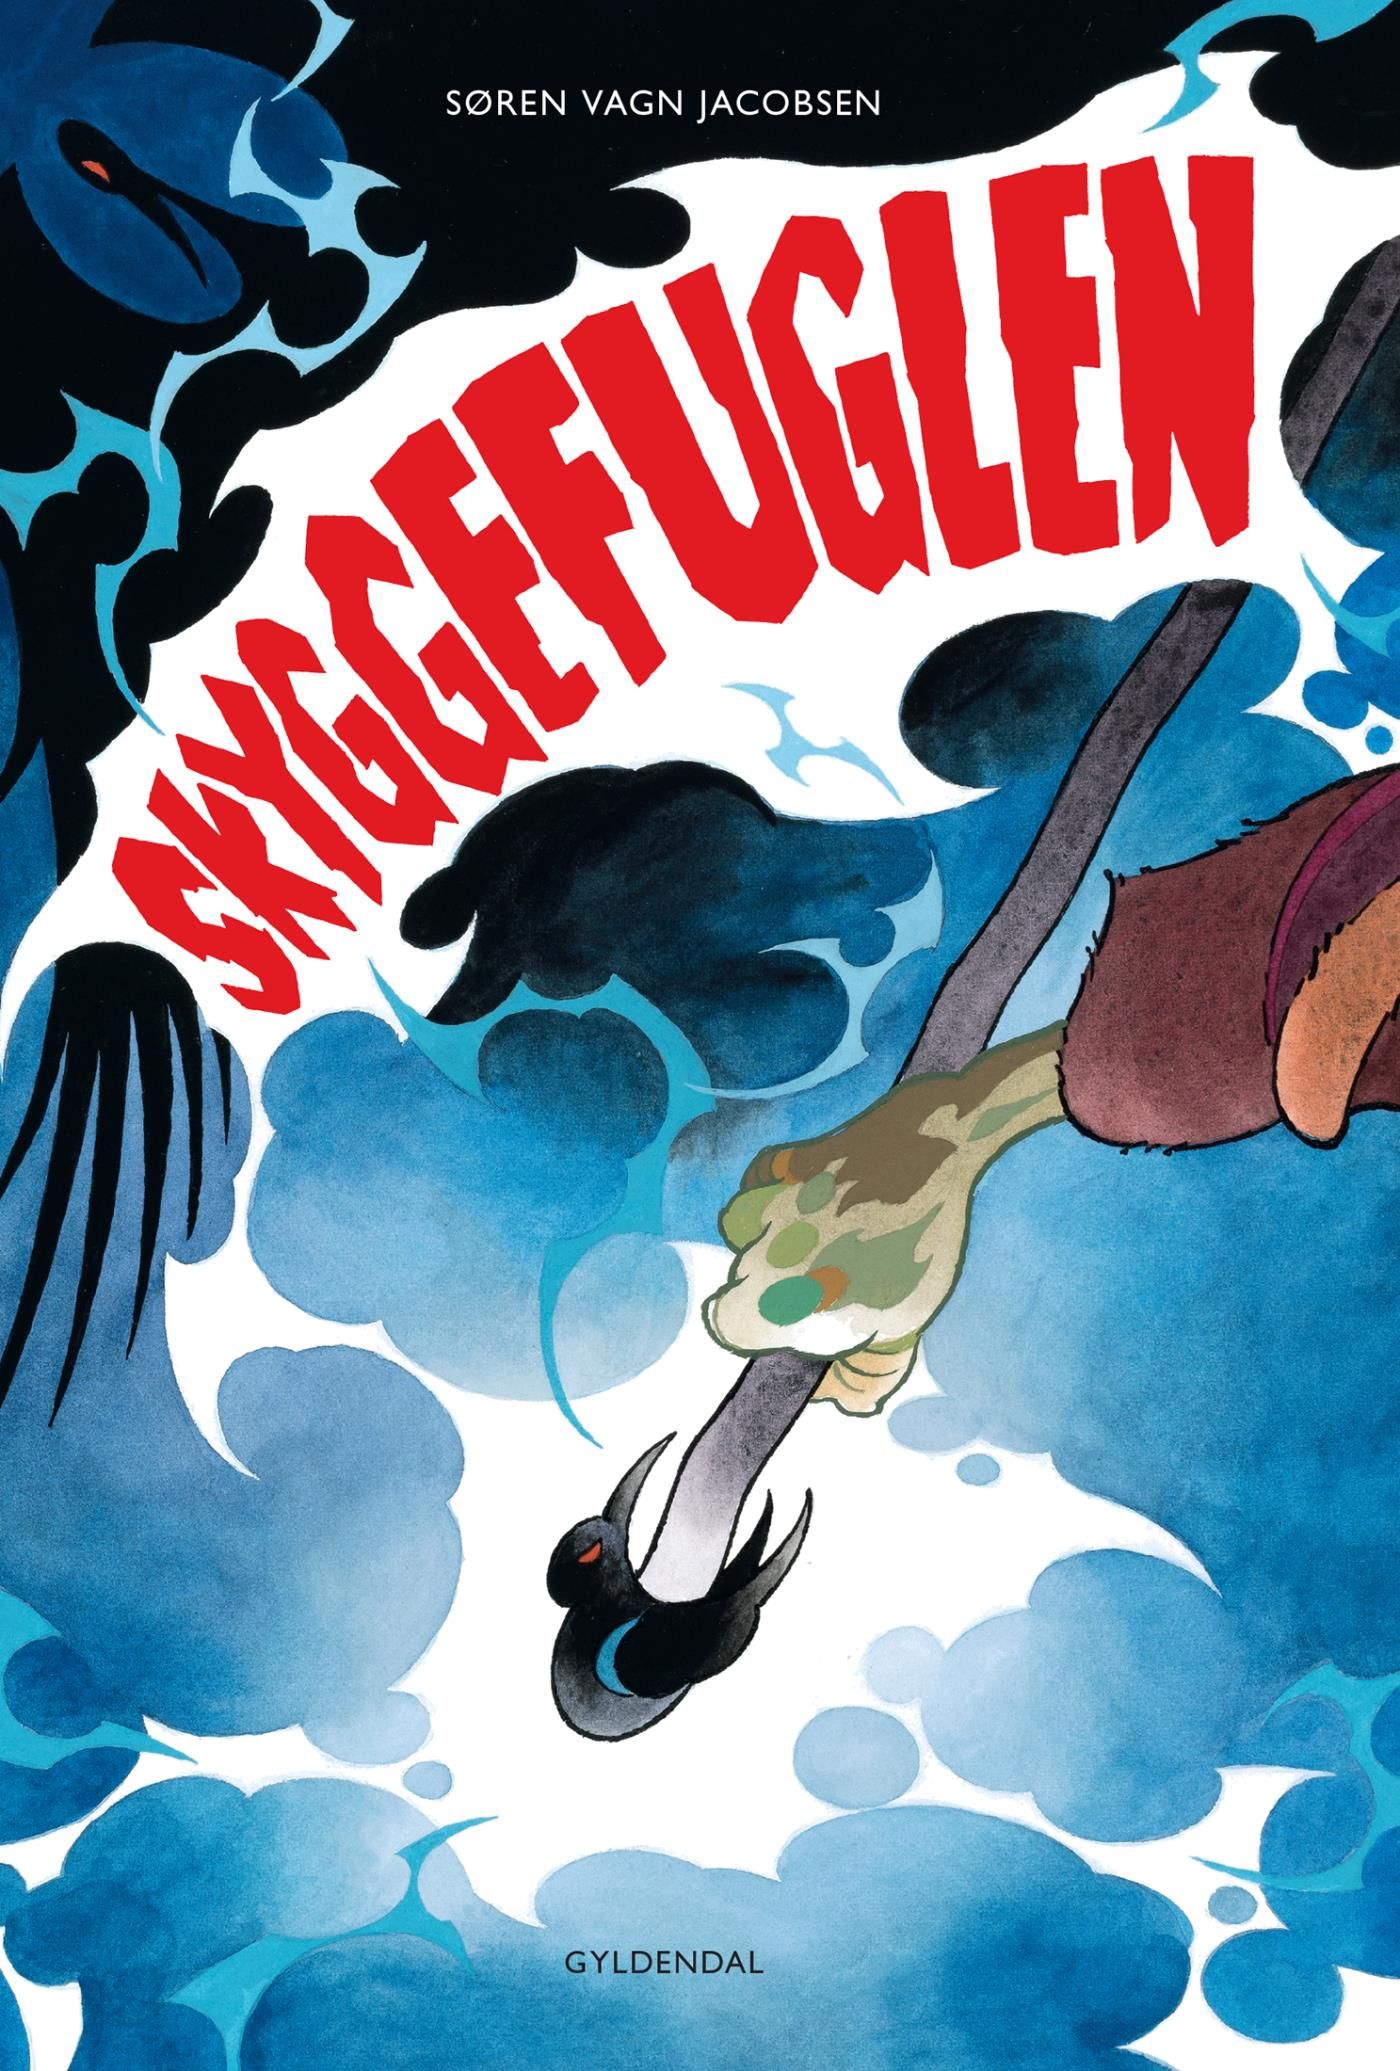 Skyggefuglen, eBook by Søren Vagn Jacobsen